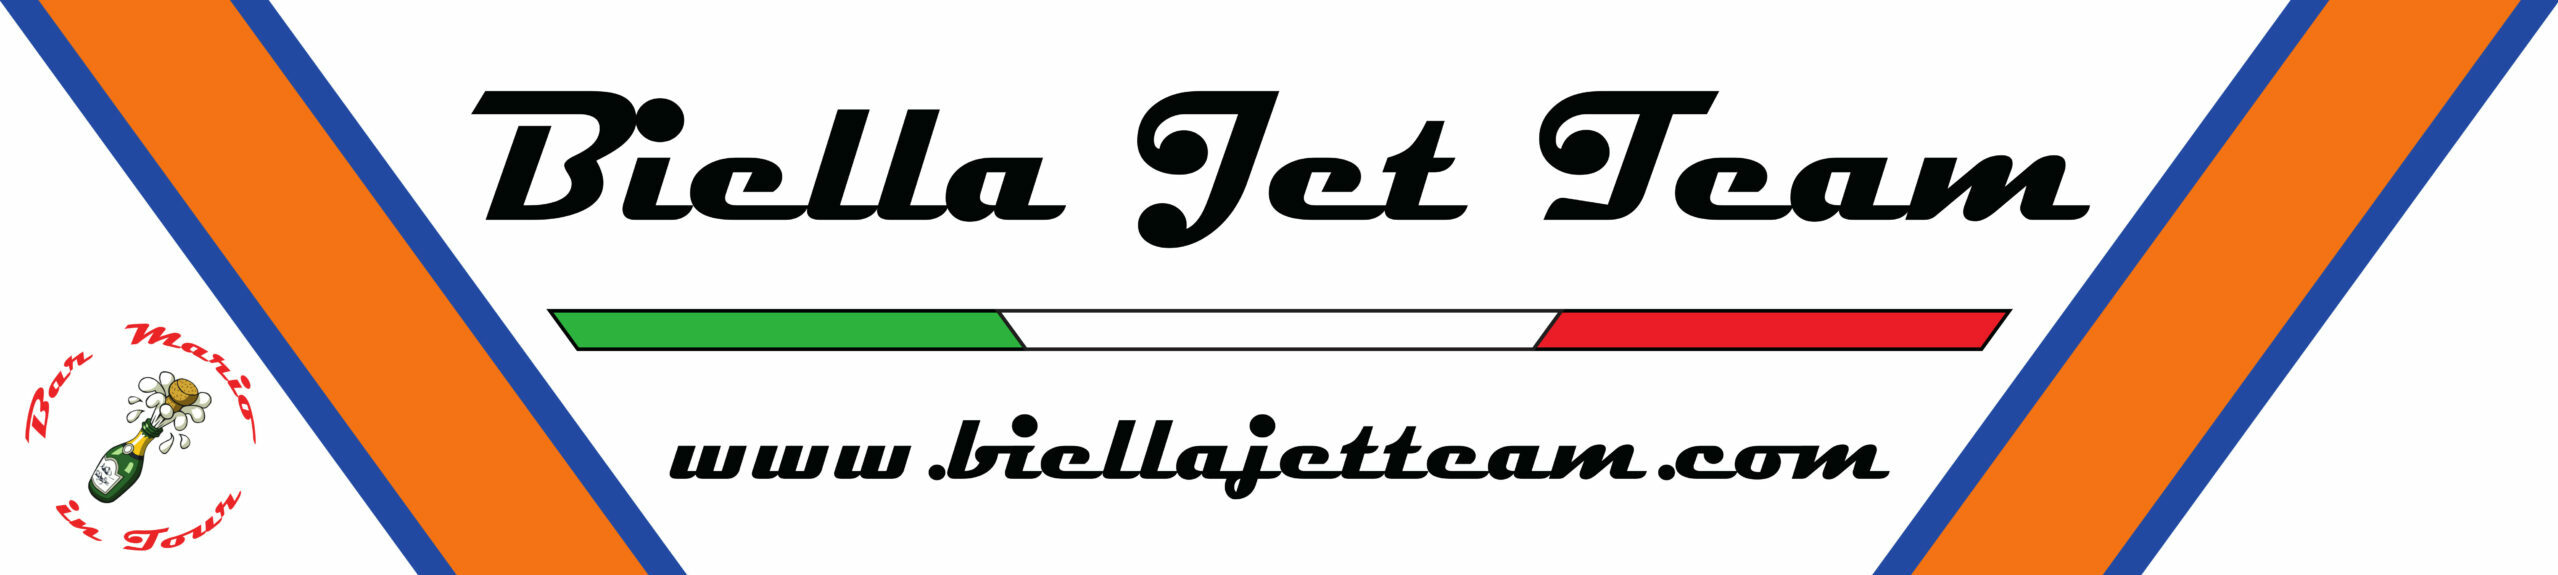 Biella Jet Team